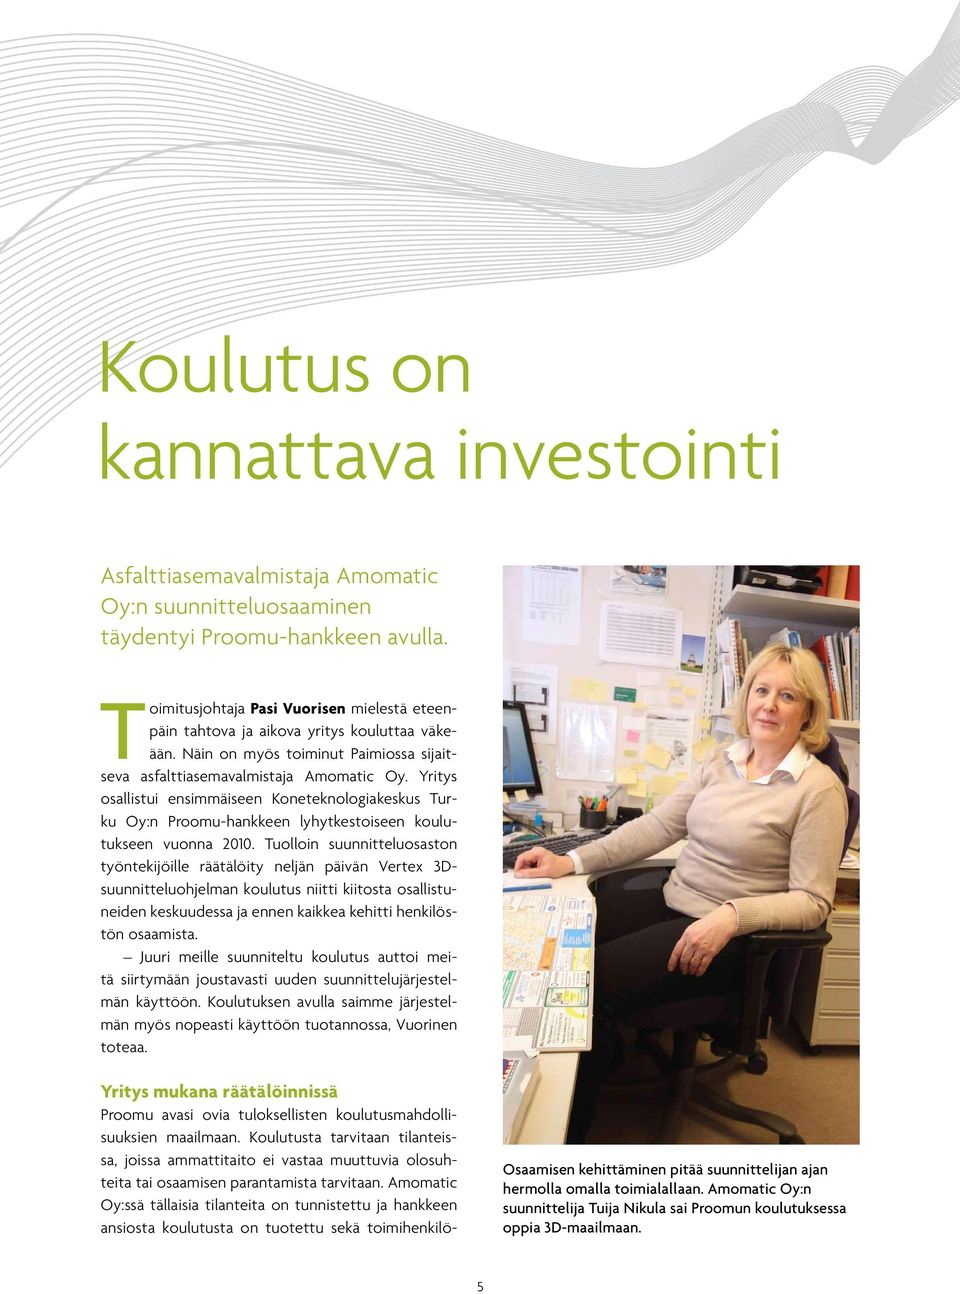 Yritys osallistui ensimmäiseen Koneteknologiakeskus Turku Oy:n Proomu-hankkeen lyhytkestoiseen koulutukseen vuonna 2010.